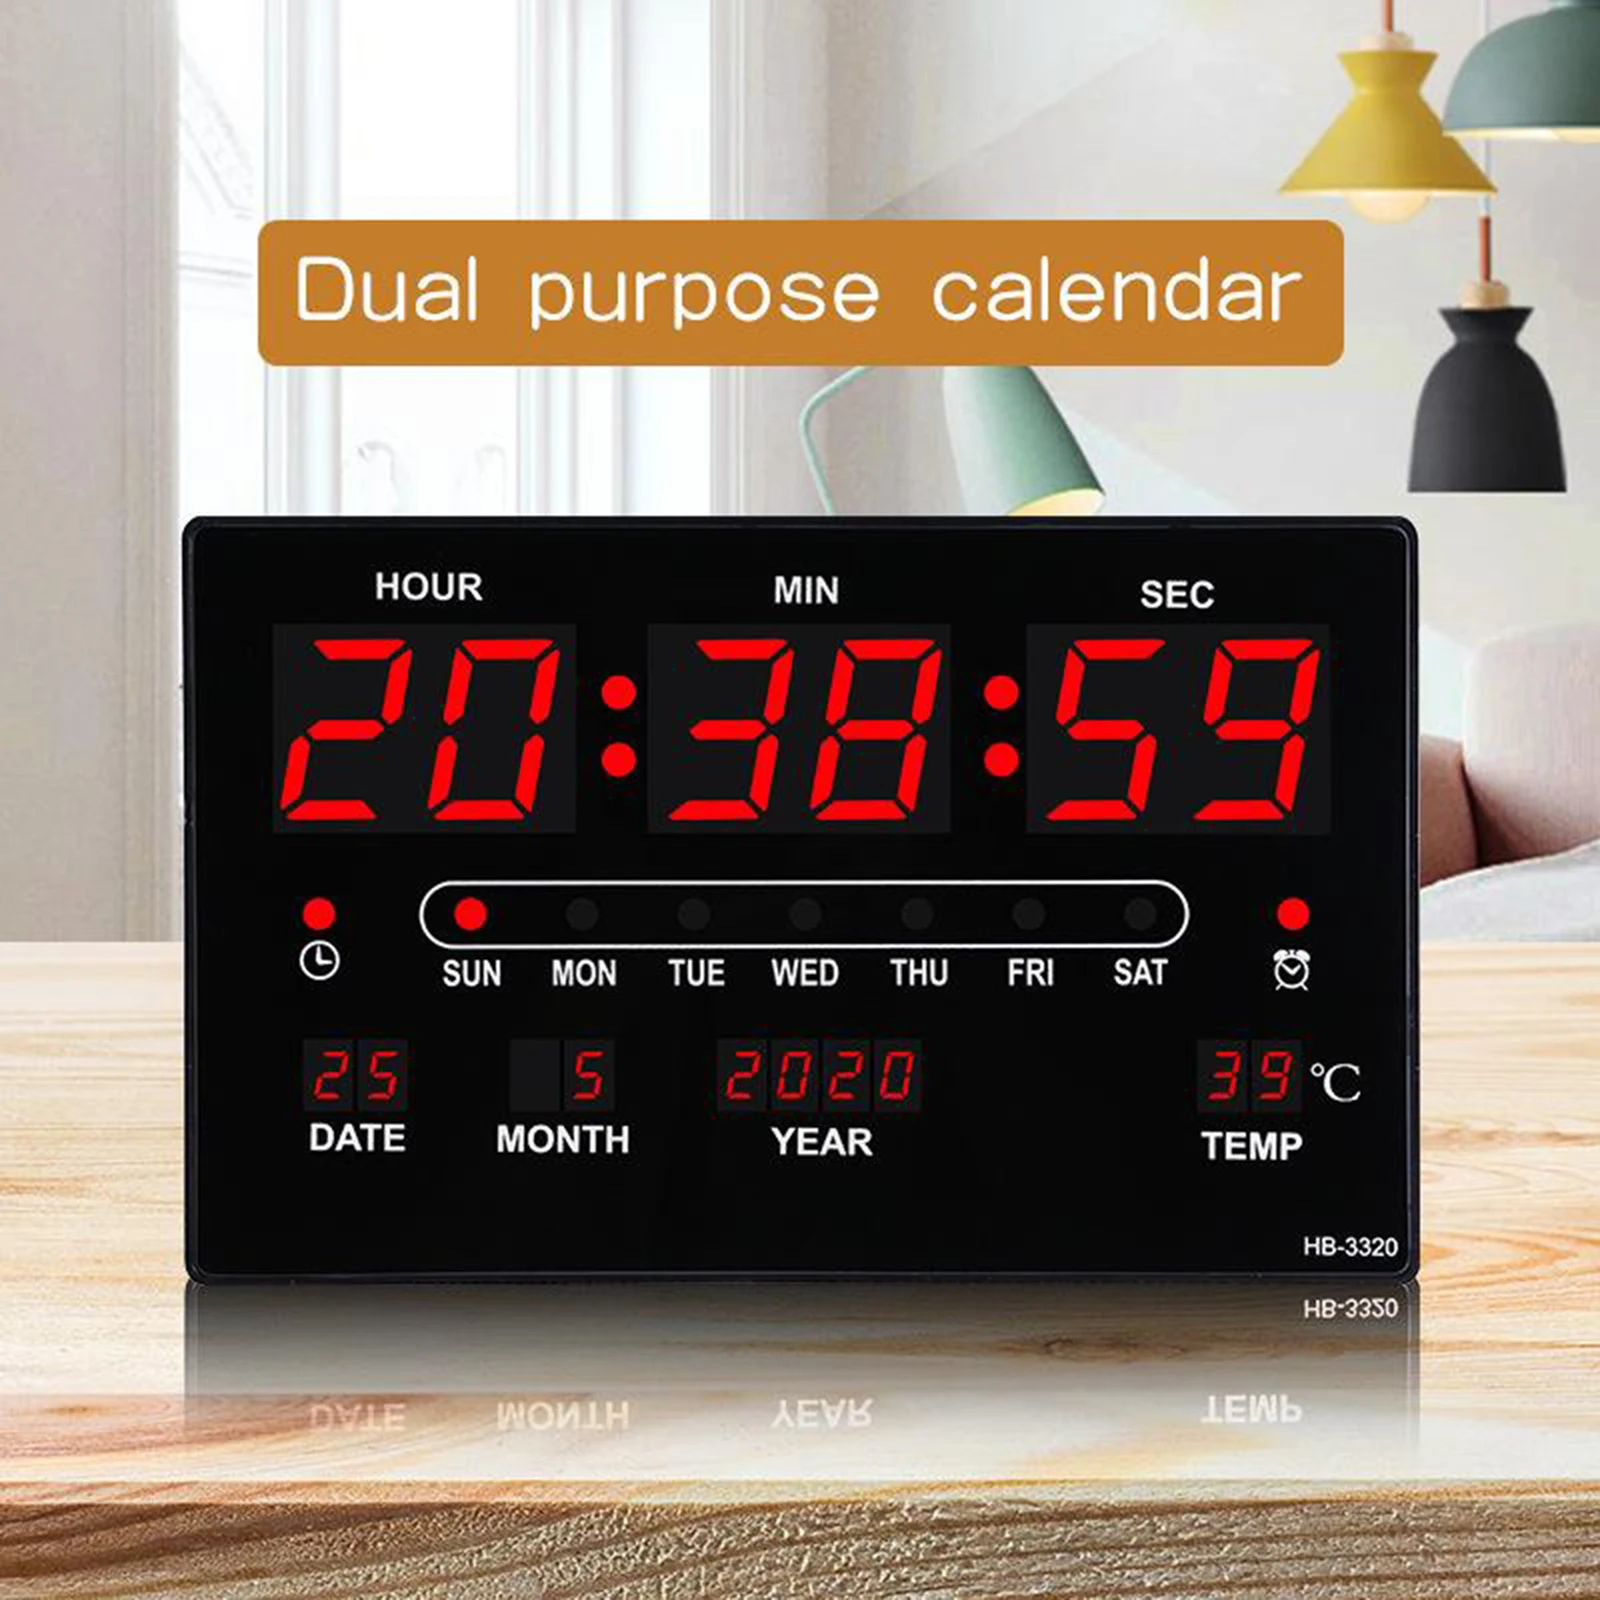 unique wall clocks Digital LED Wall Desk Alarm Clock LED Wall Clock with Calendar Temperature 12H 24H Display industrial wall clock